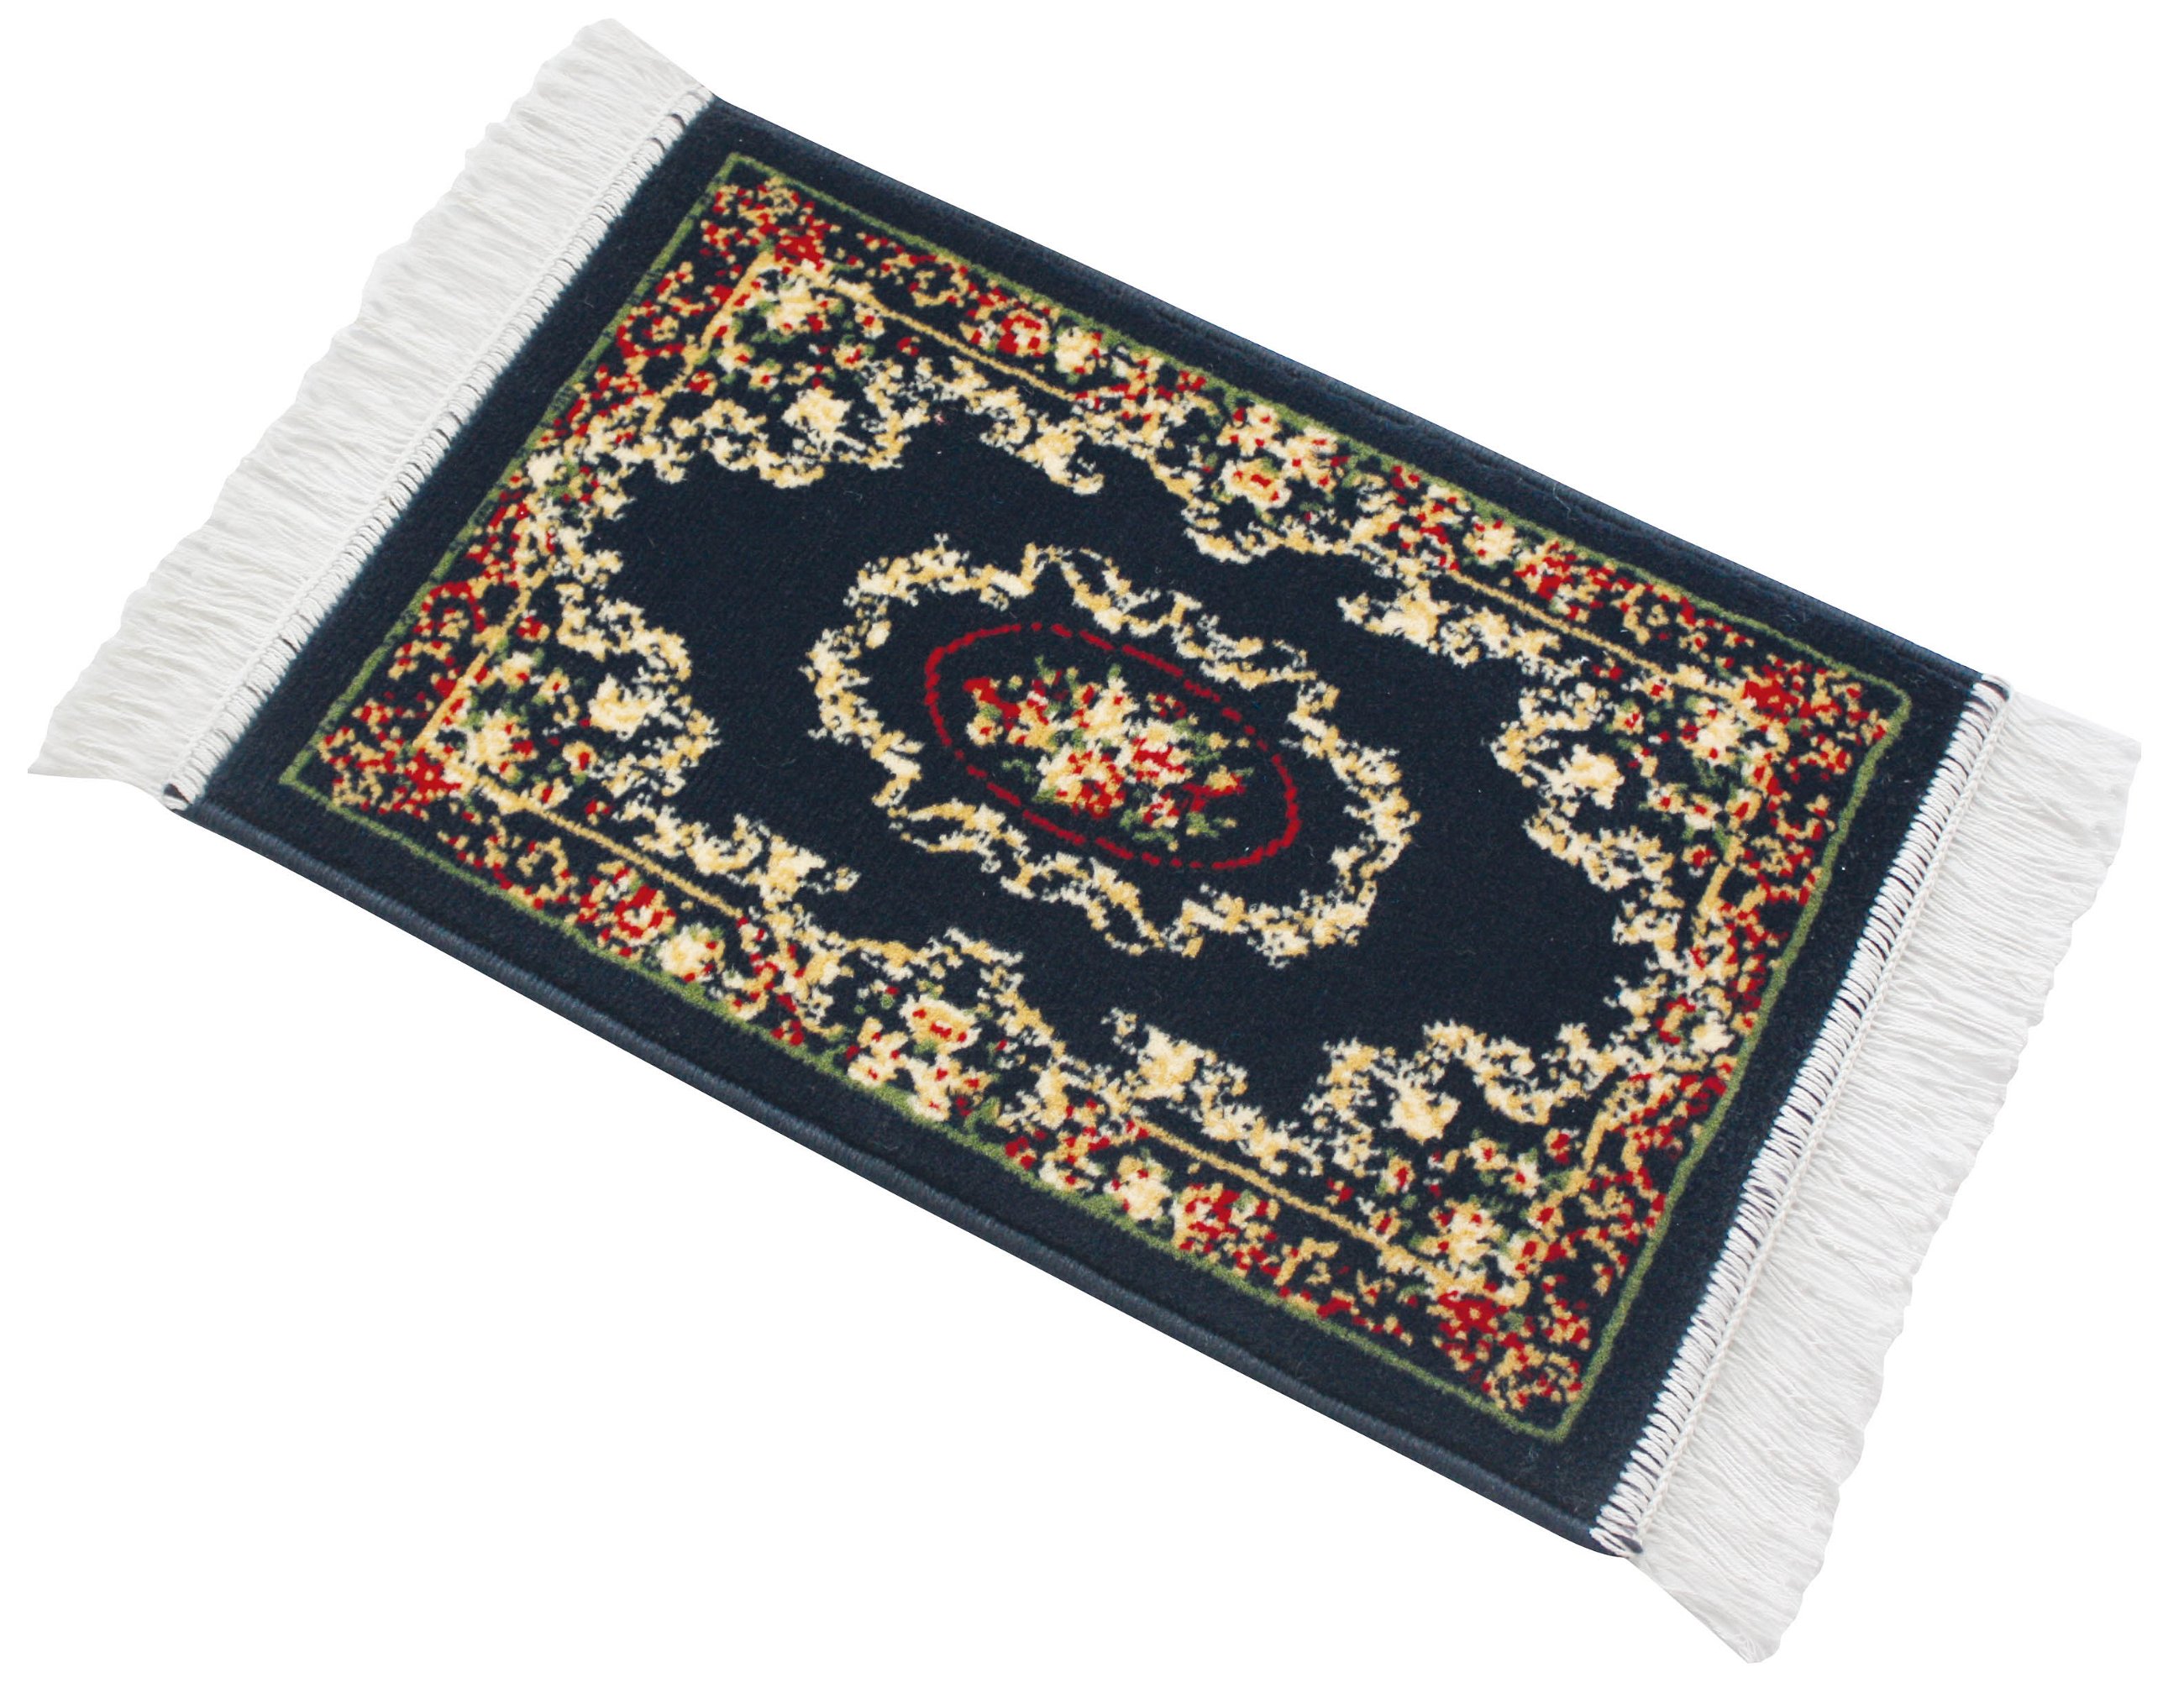 Car carpet Persian blue Persian carpet